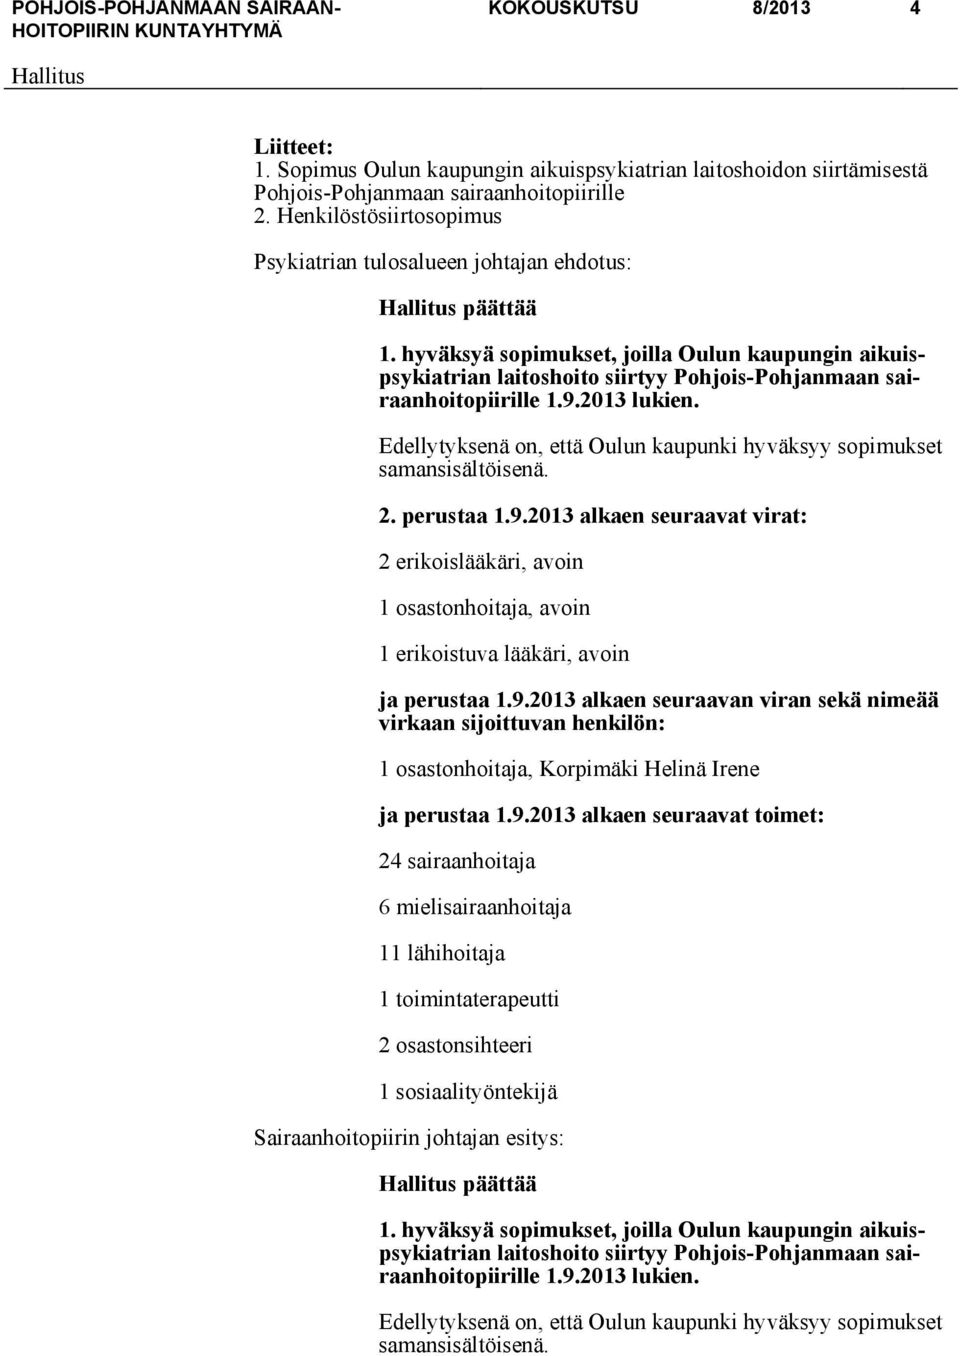 hyväksyä sopimukset, joilla Oulun kaupungin aikuispsykiatrian laitoshoito siirtyy Pohjois-Pohjanmaan sairaanhoitopiirille 1.9.2013 lukien.